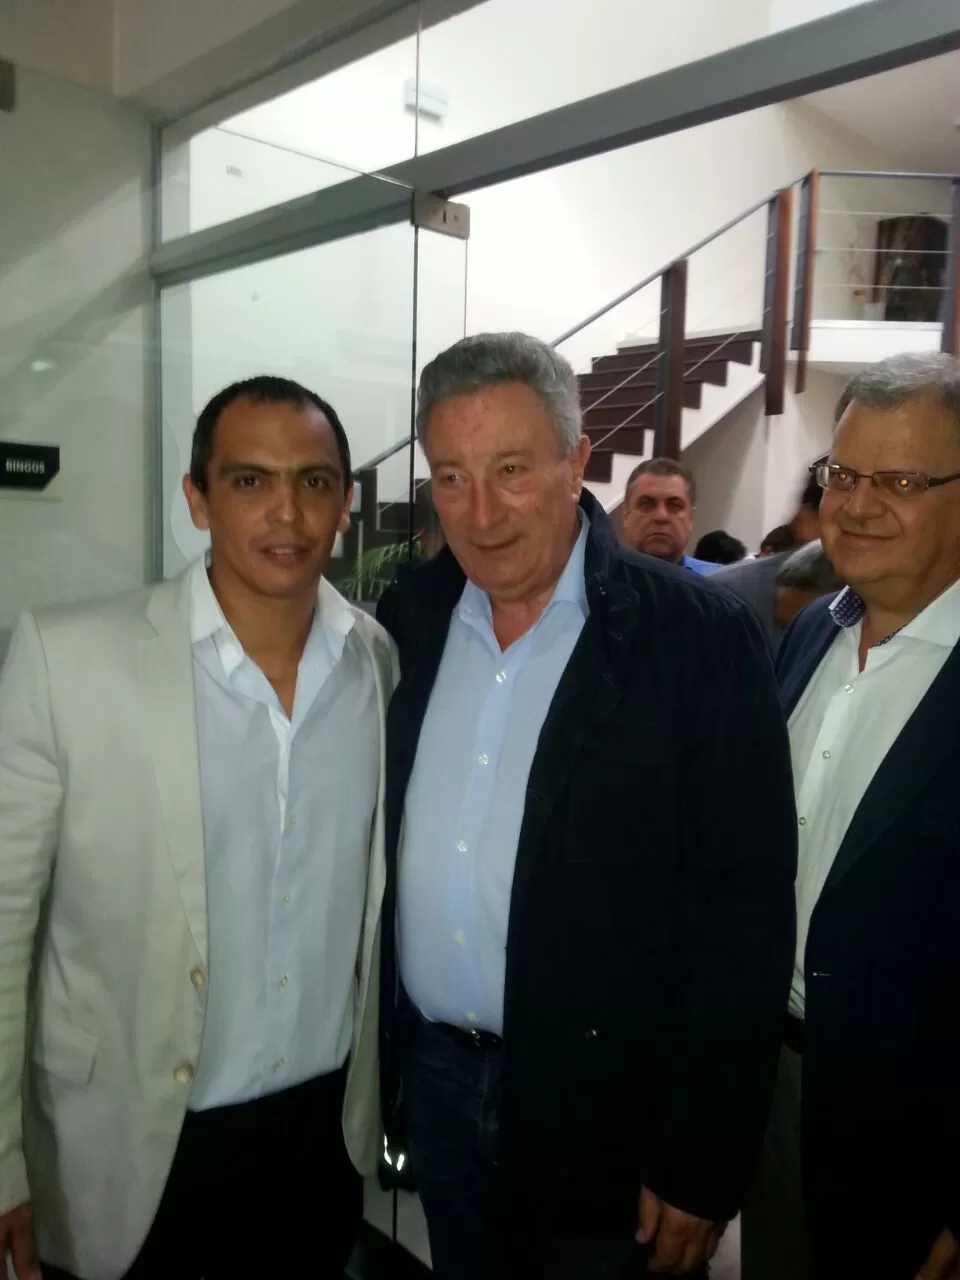 PRESENCIA. Darío Zamoratte aparece junto a Luis Segura, titular de la AFA, en la reunión del Consejo Federal en Salta. la gaceta